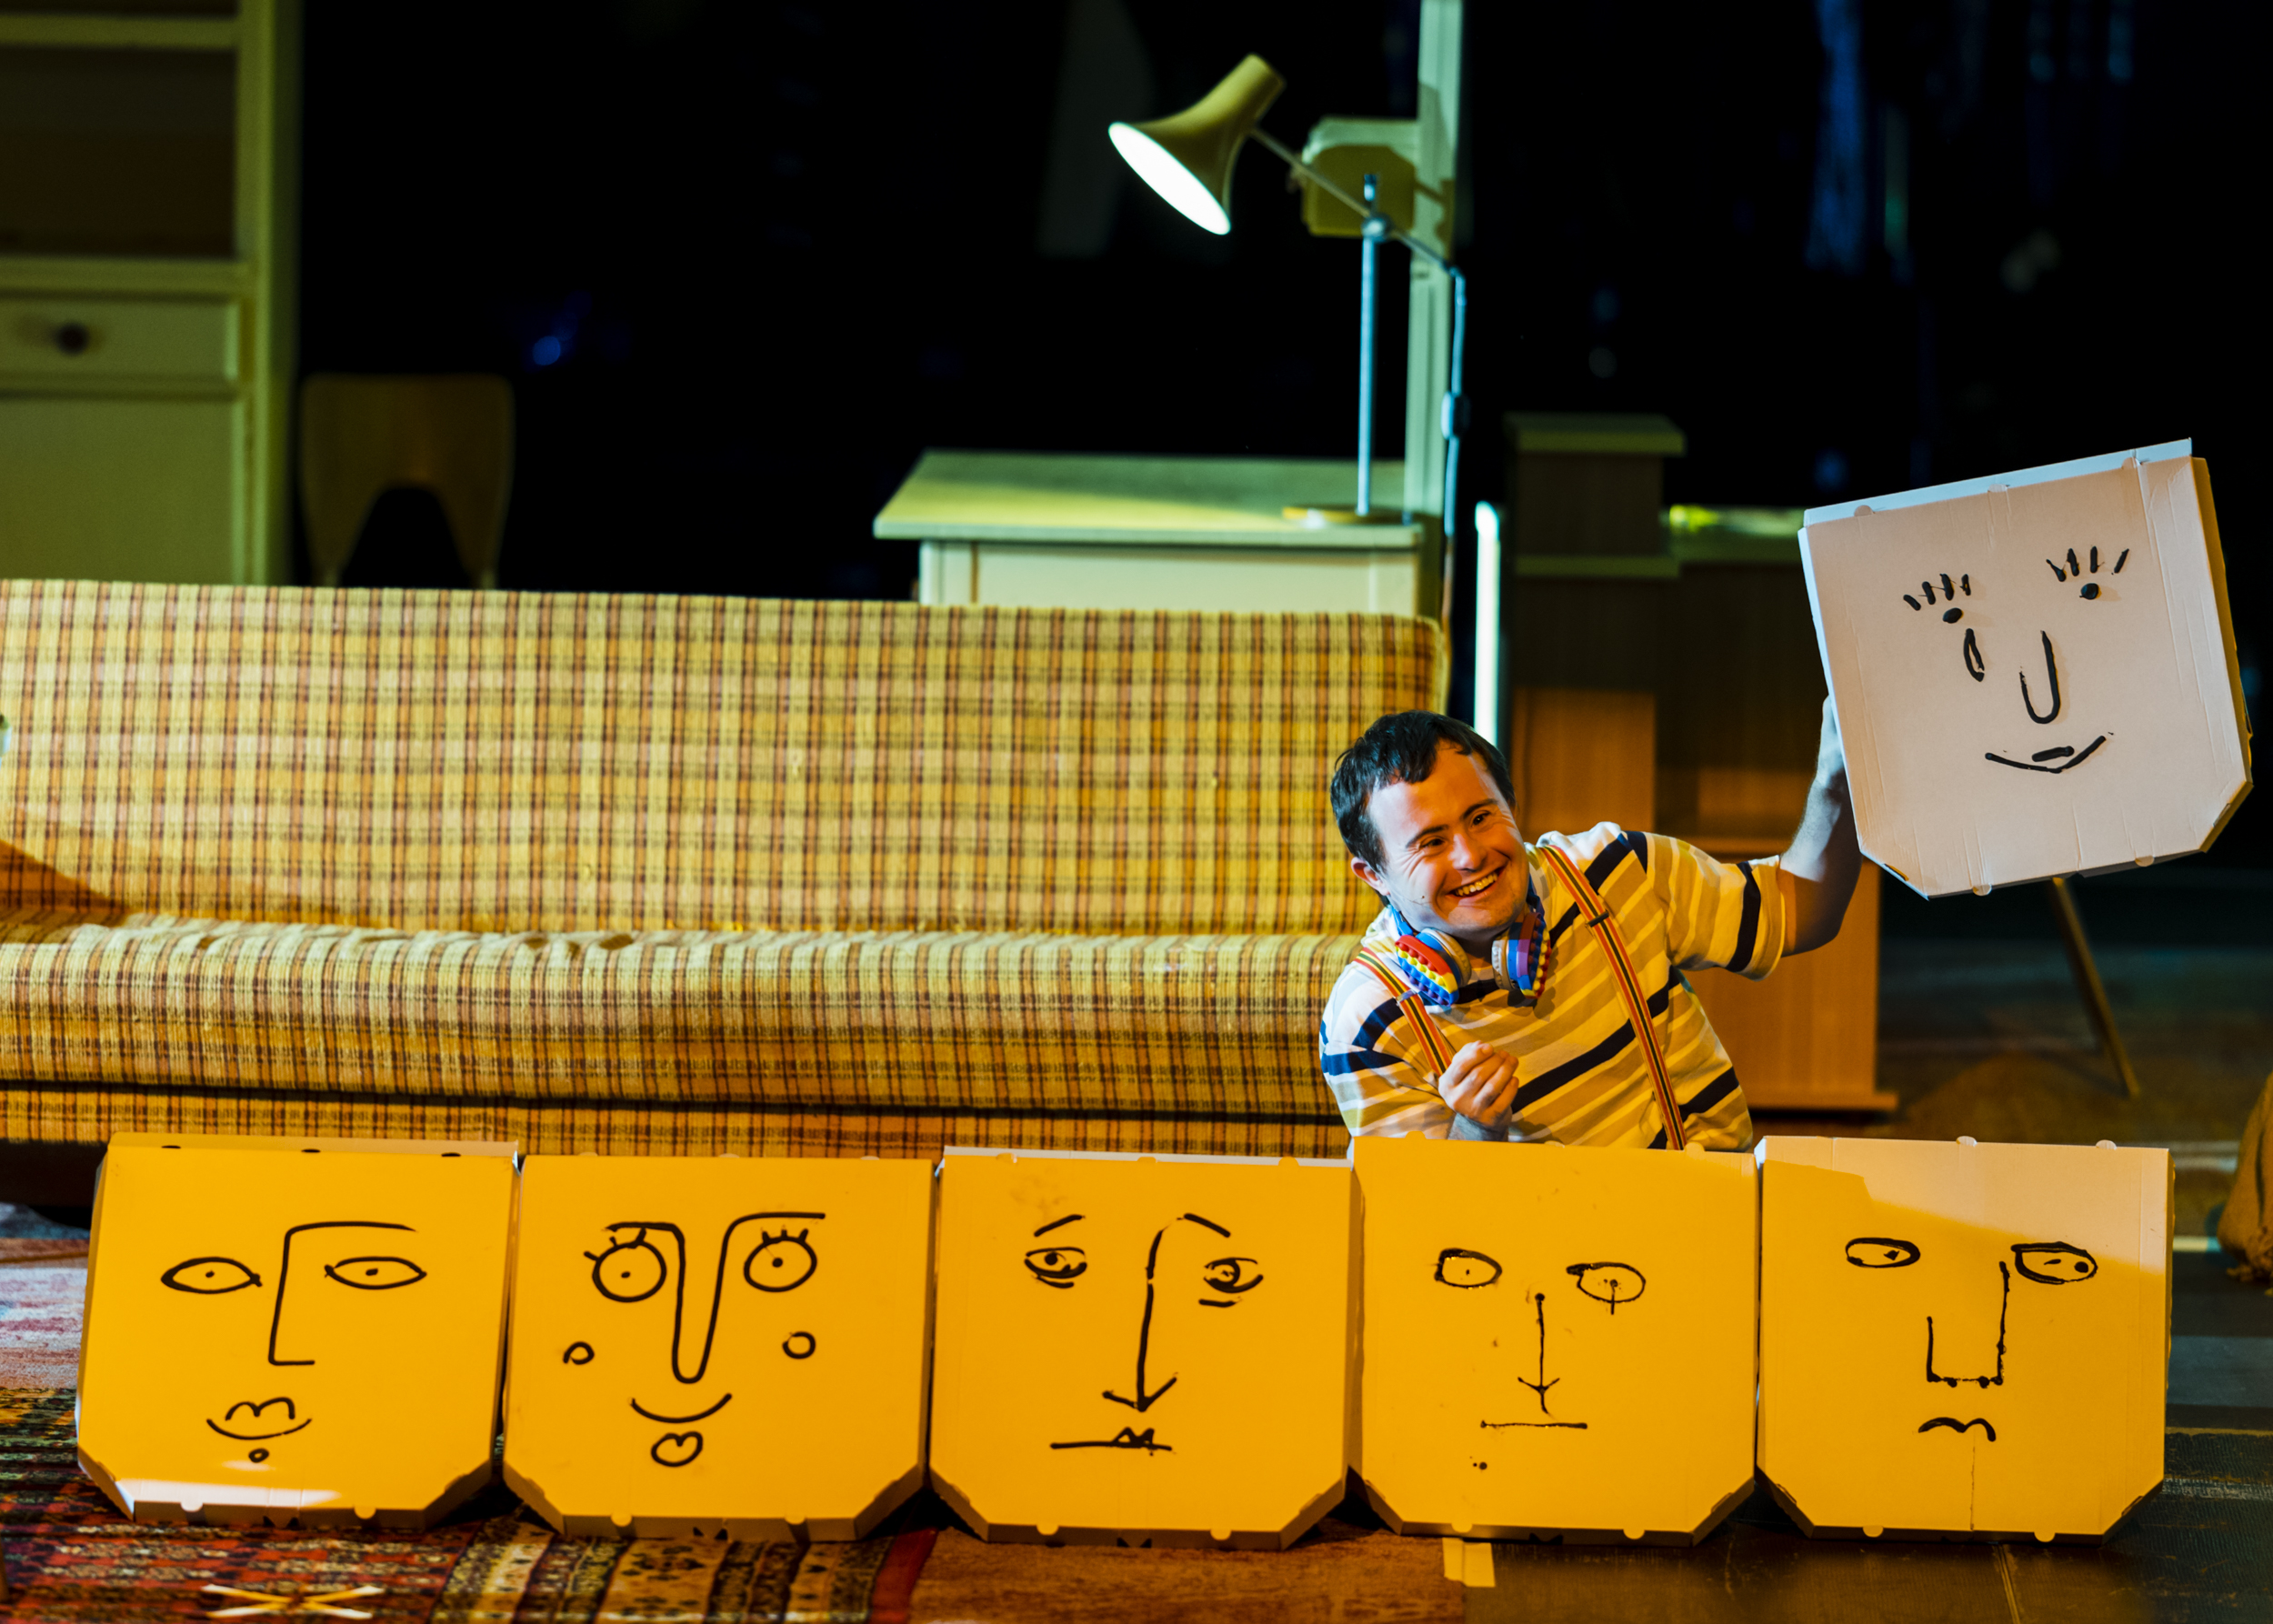 W rzędzie na podłodze ustawione są pudełka do pizzy z narysowanymi dziecięcą kreską twarzami wyrażającymi różne emocje. Za pudełkami siedzi rozbawiony mężczyzna, który w uniesionej dłoni trzyma pudełko do pizzy z narysowaną uśmiechniętą twarzą i lecącą z oka łezką.